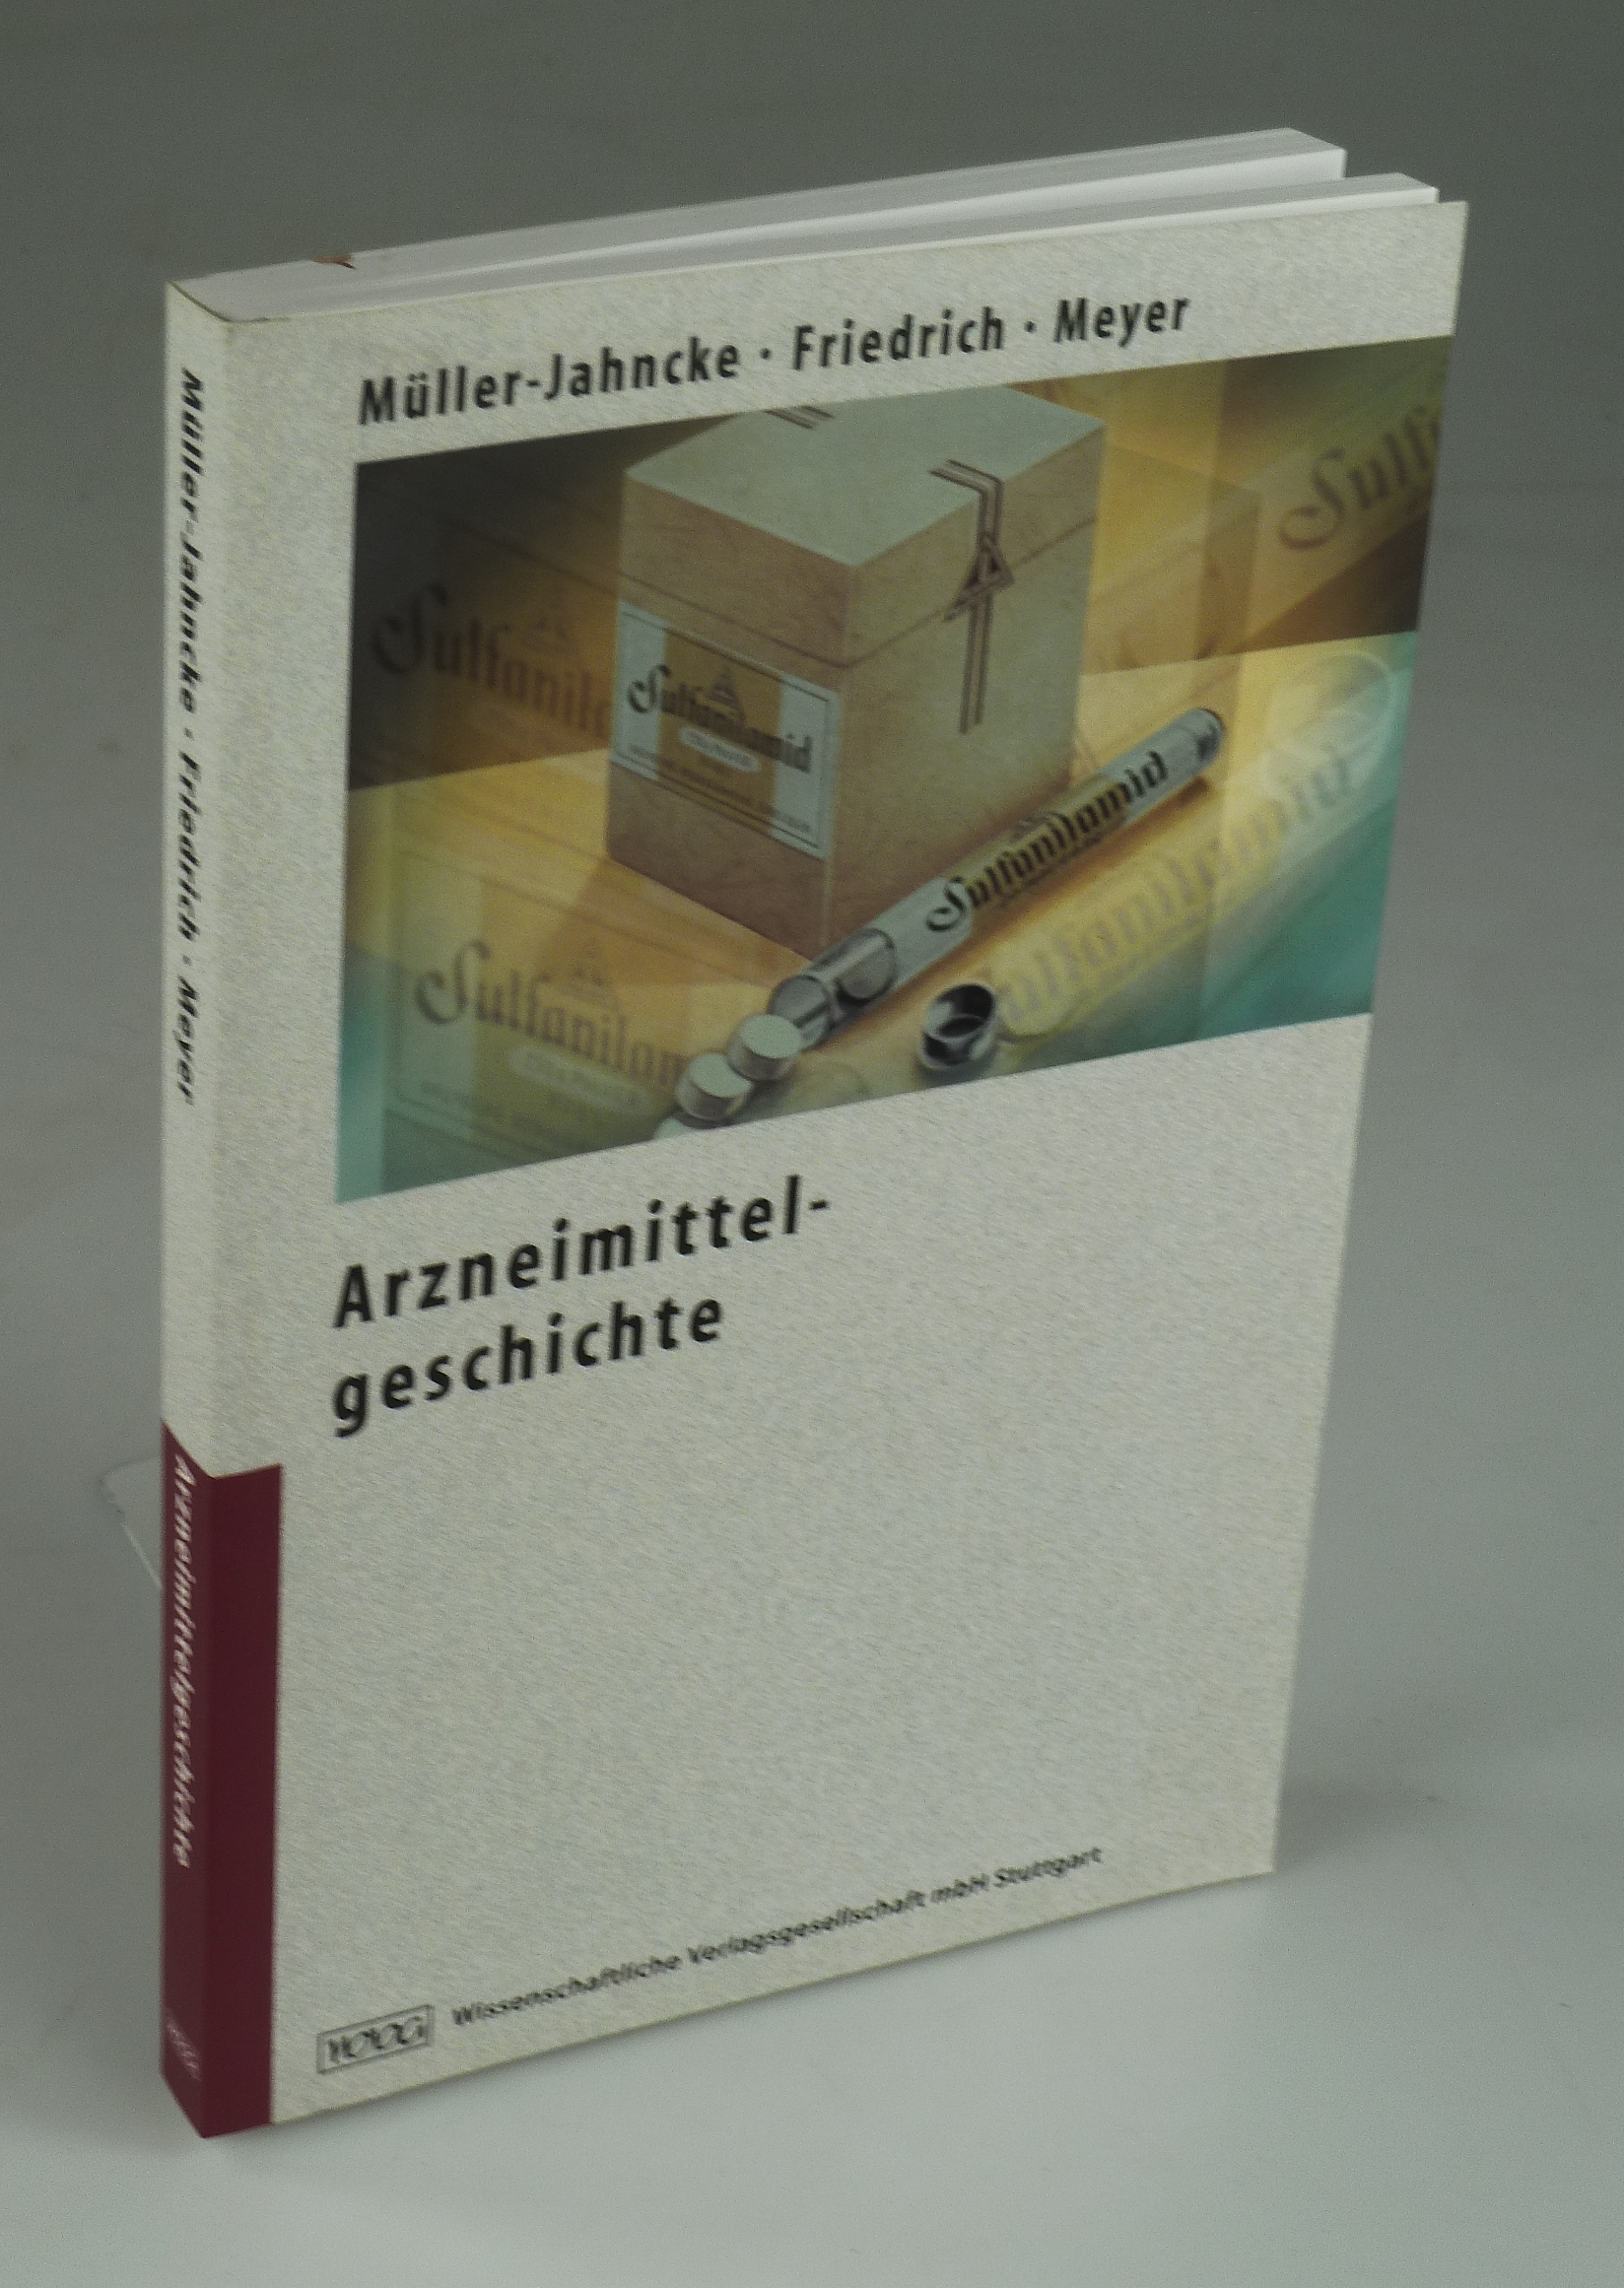 Arzneimittelgeschichte. - MÜLLER-JAHNCKE / FRIEDRICH / MEYER.